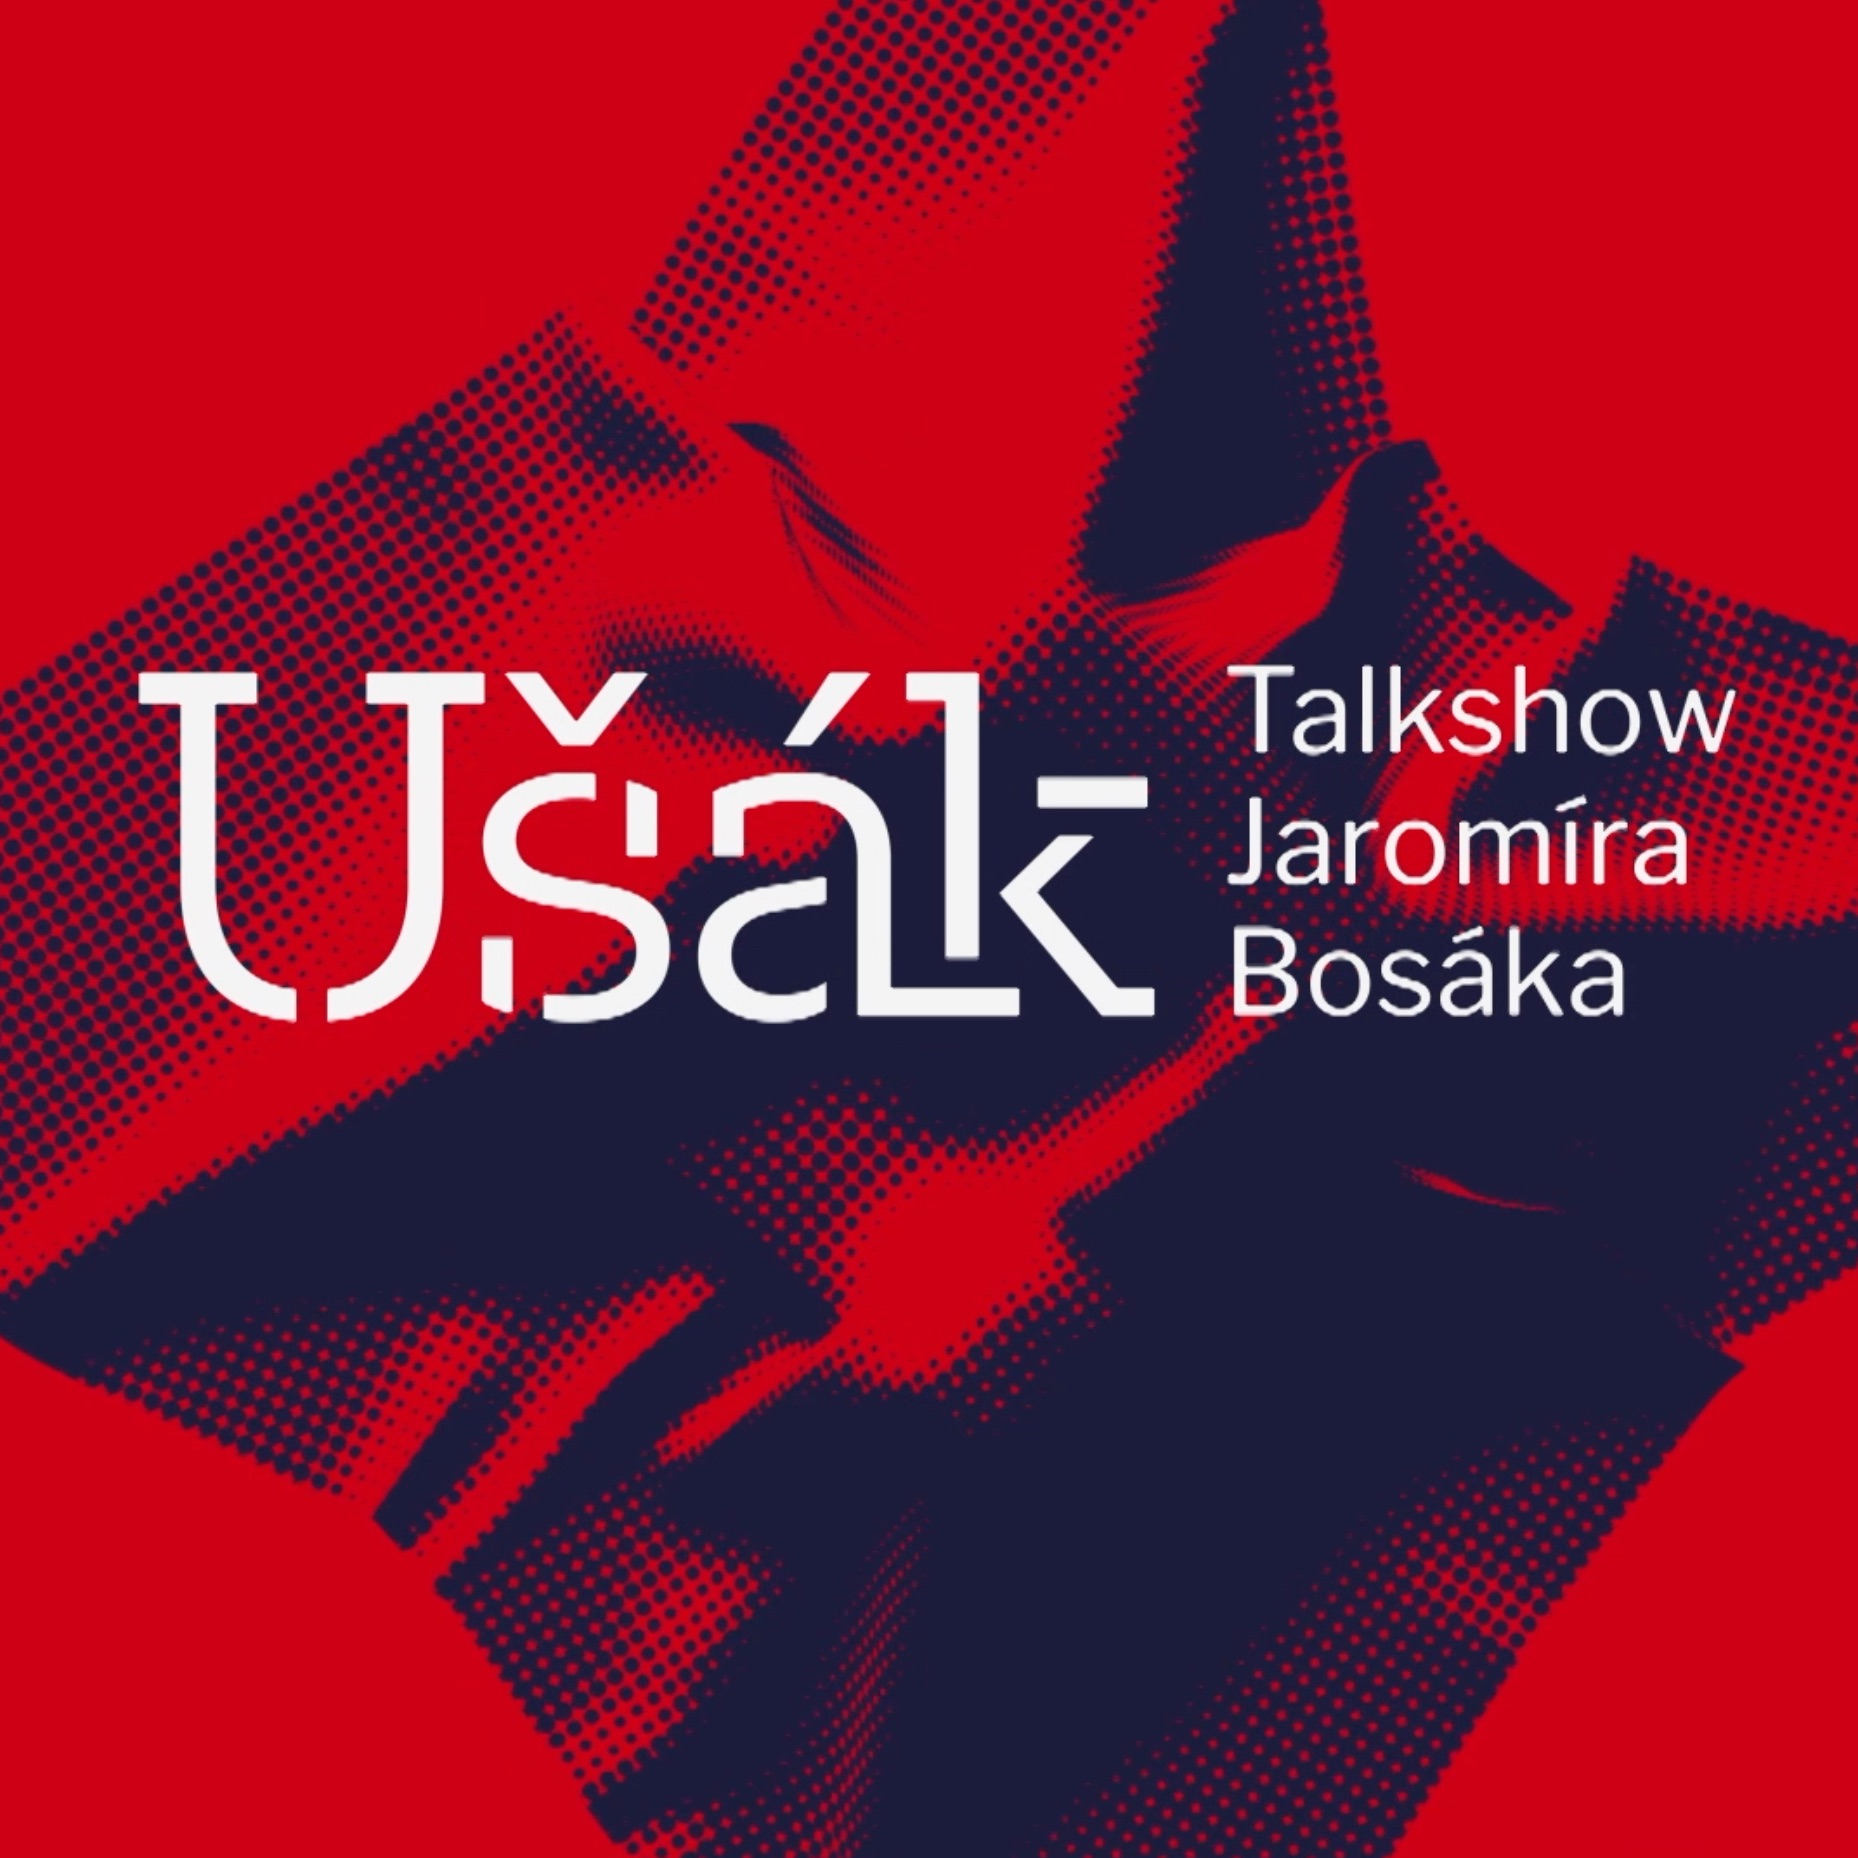 Ušák - Talkshow Jaromíra Bosáka